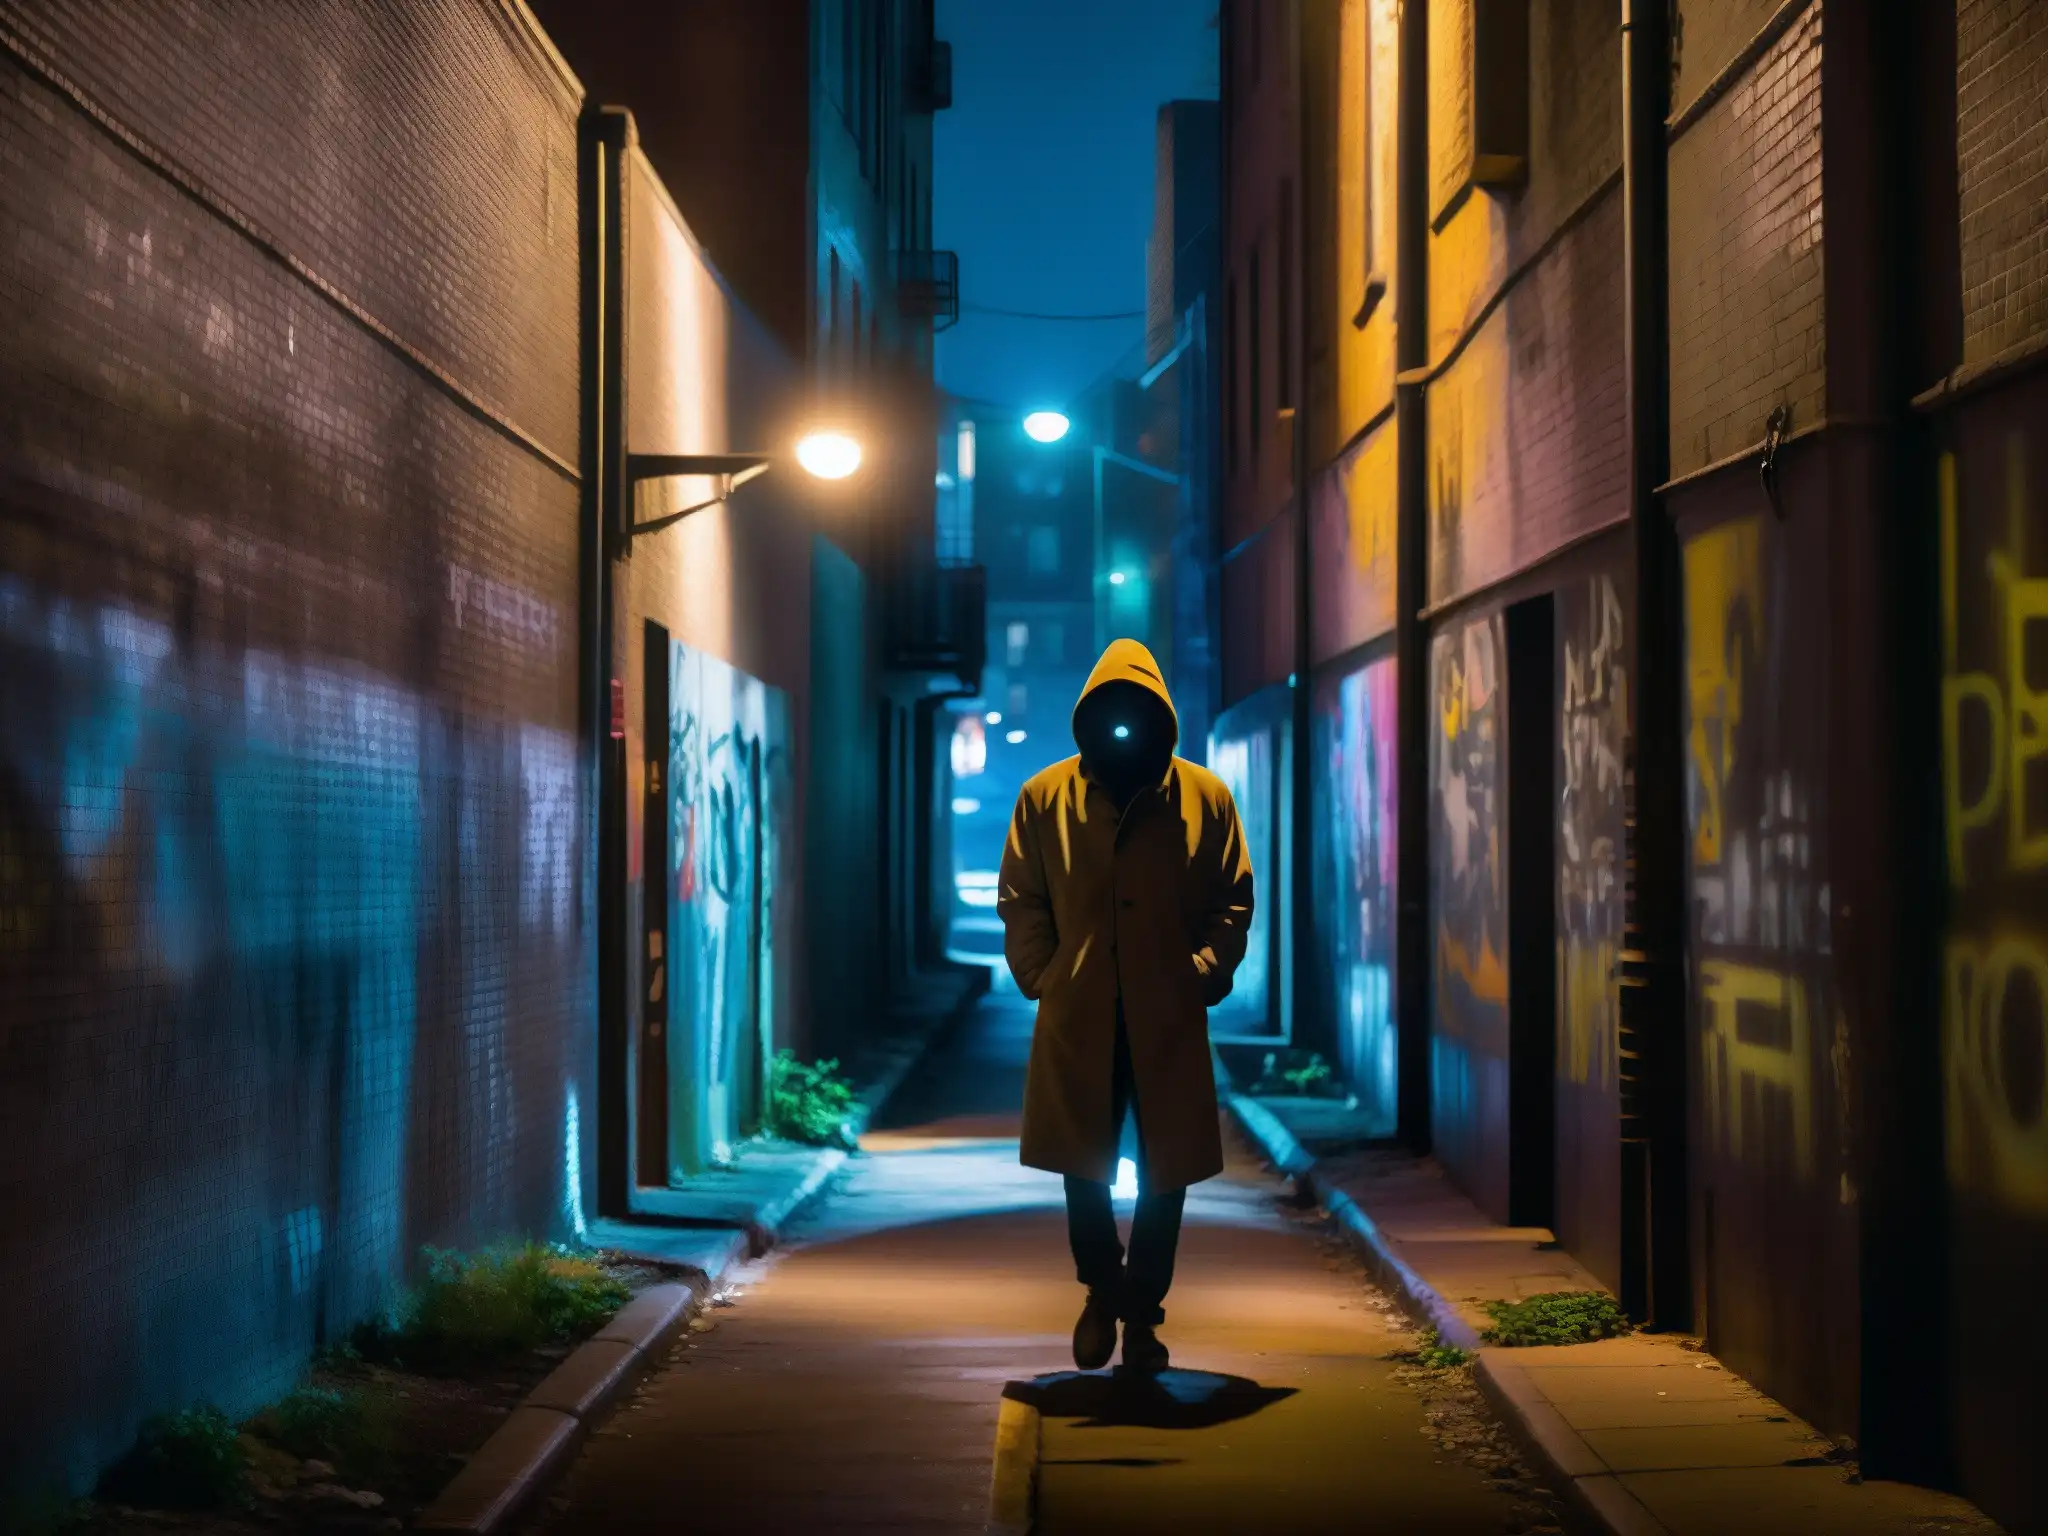 Seducción en mitos y leyendas urbanas: callejón nocturno con graffiti y figura misteriosa en sombras, evocando suspenso y misterio urbano